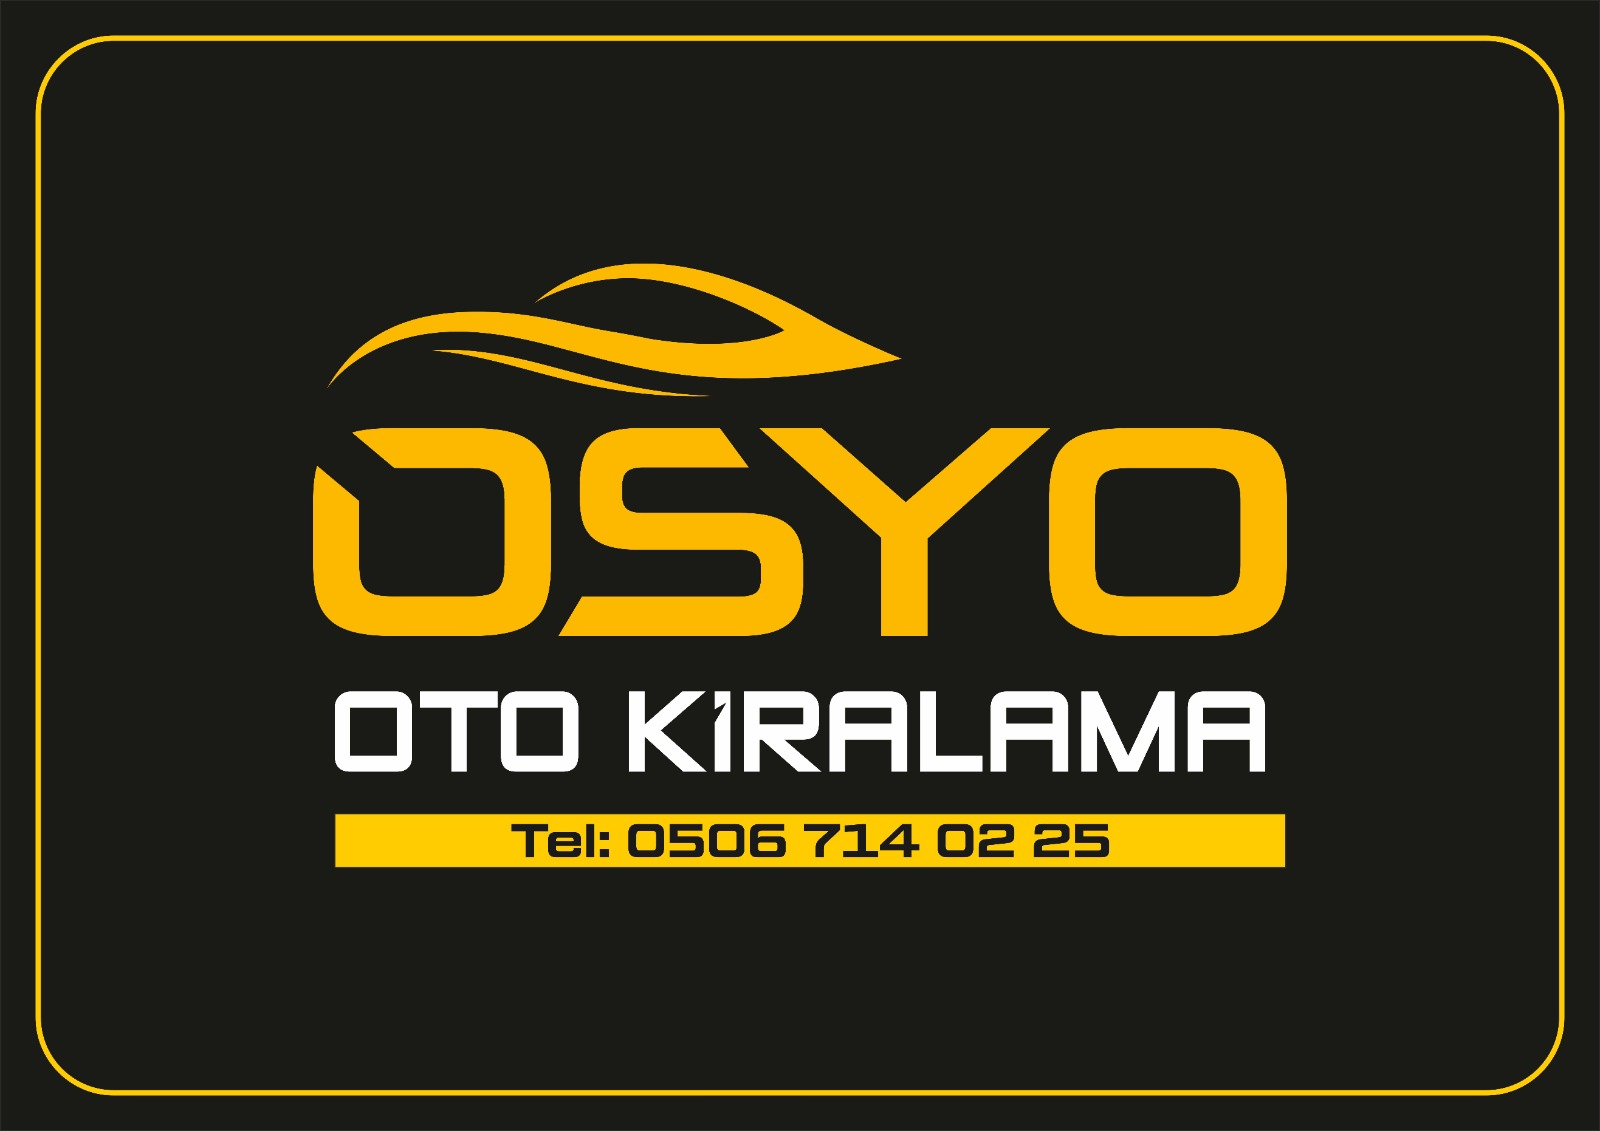 OSYO OTO KİRALAMA Logo